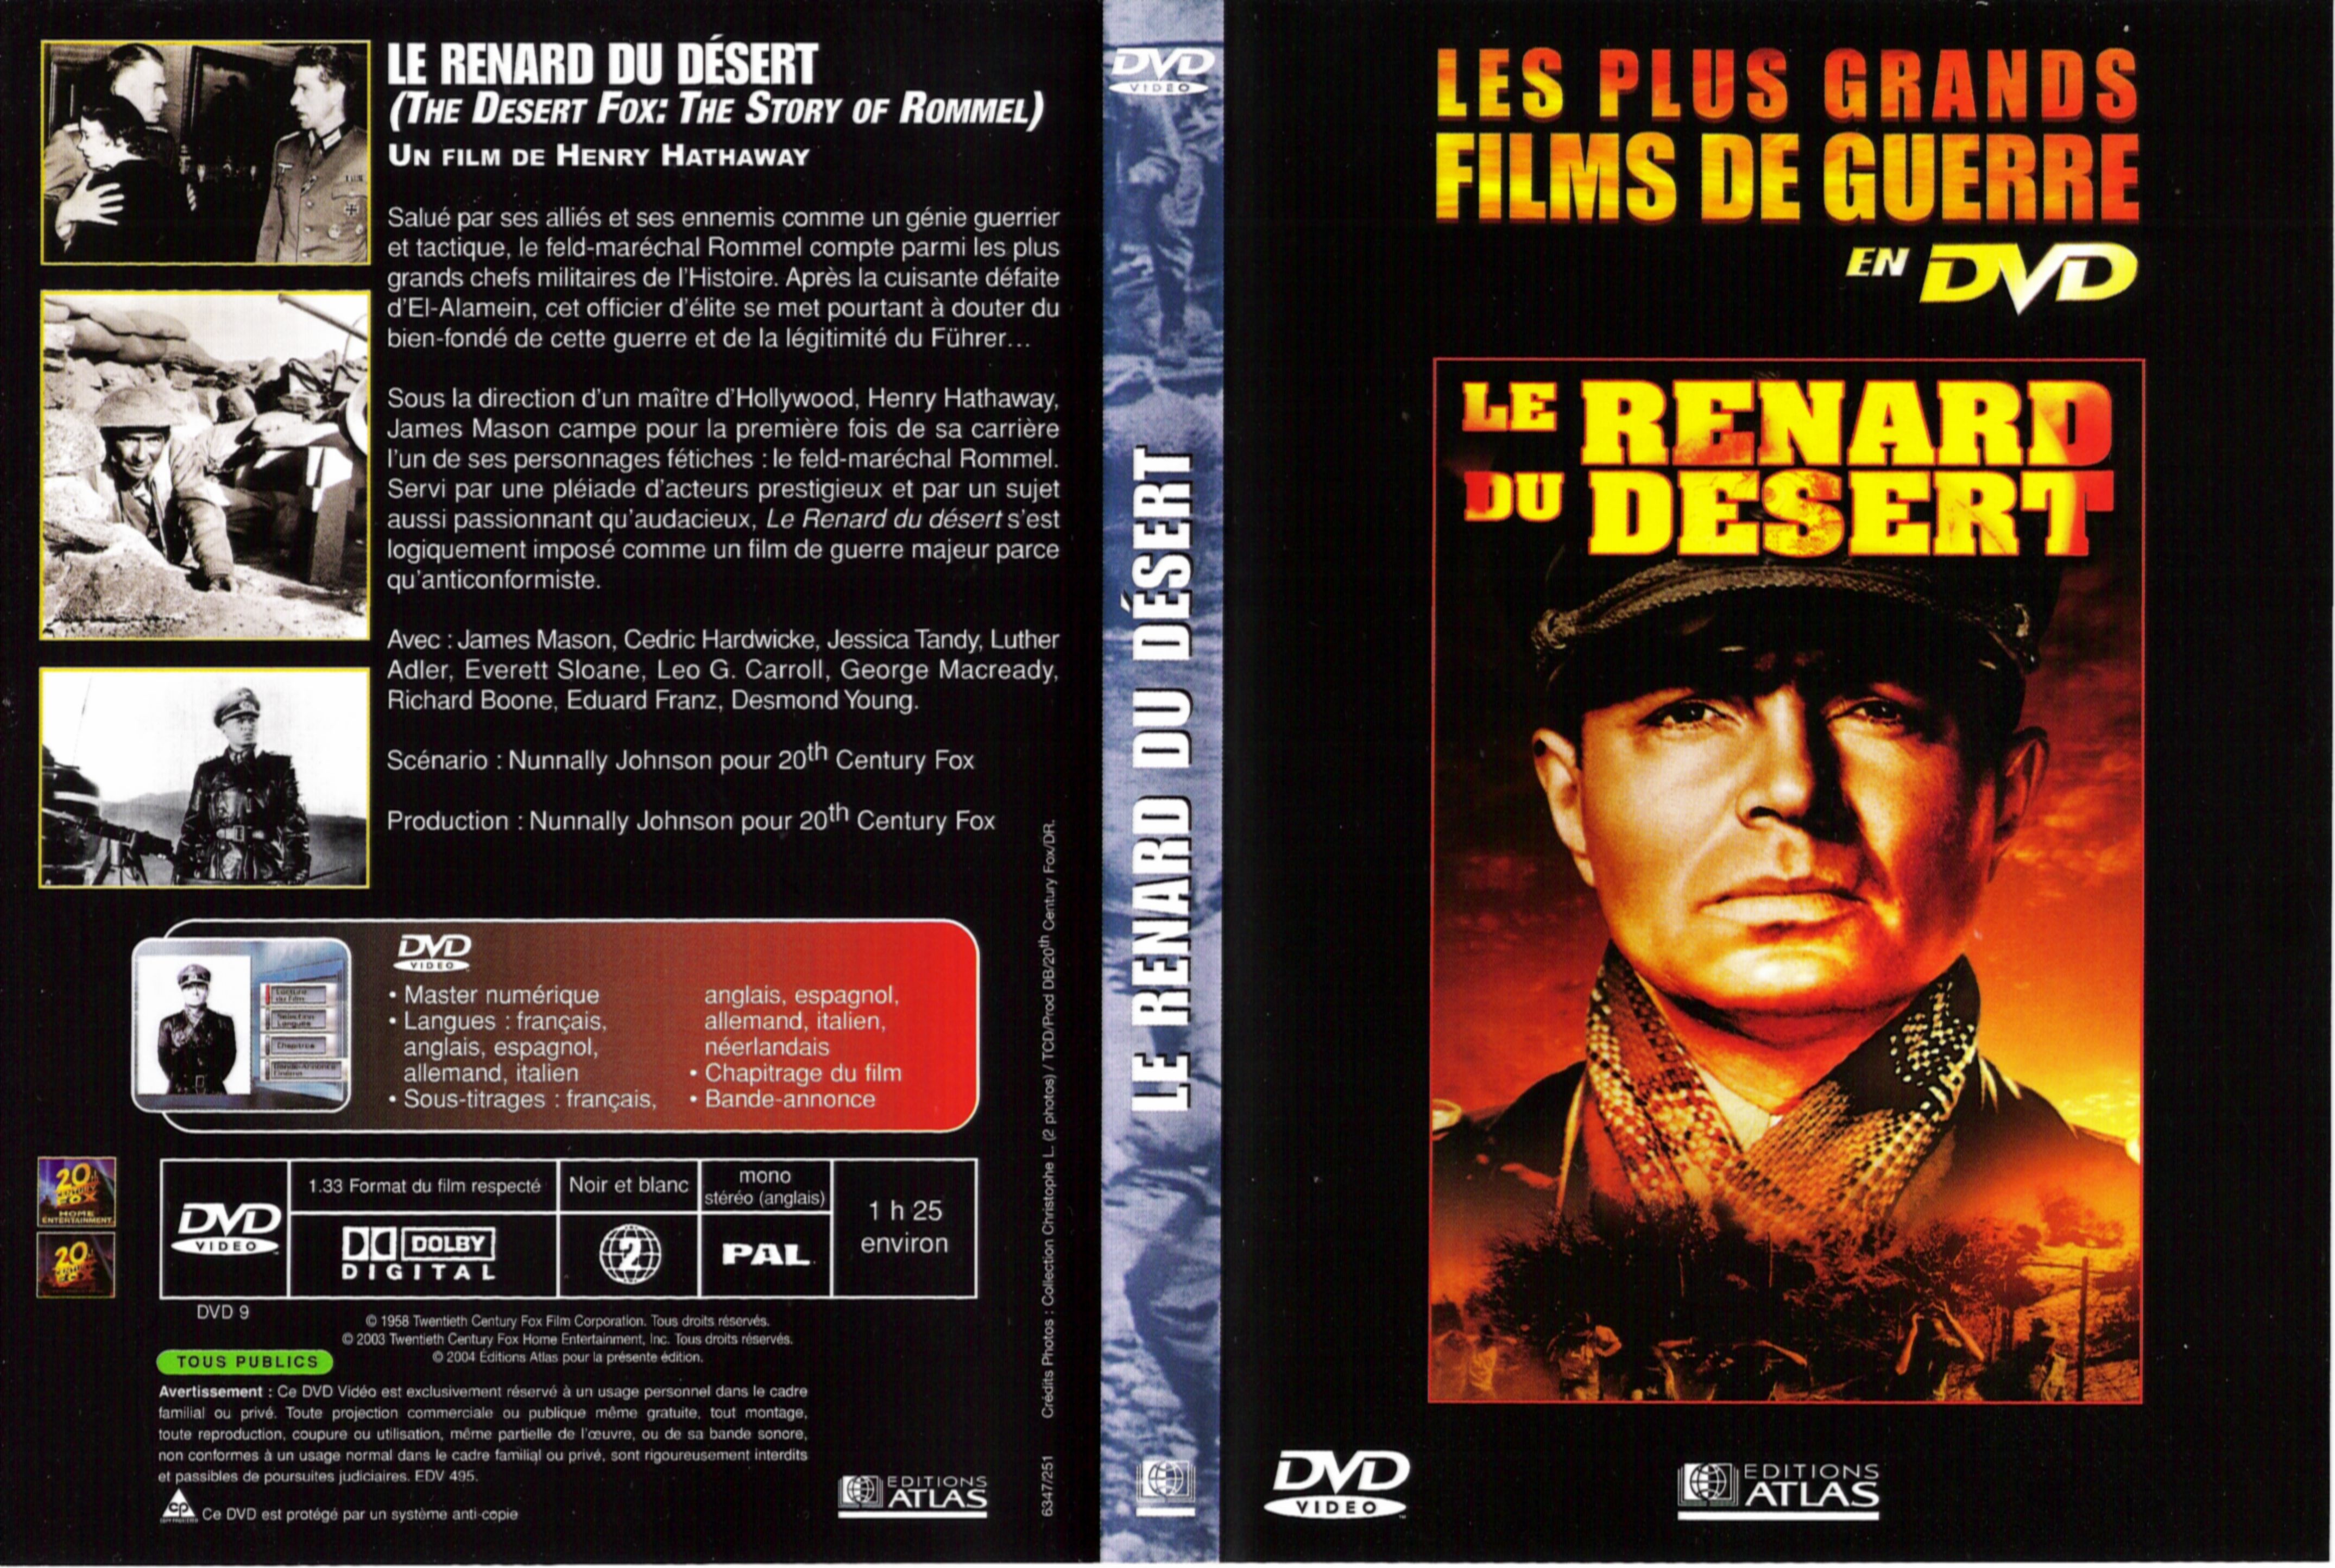 Jaquette DVD Le renard du desert v2